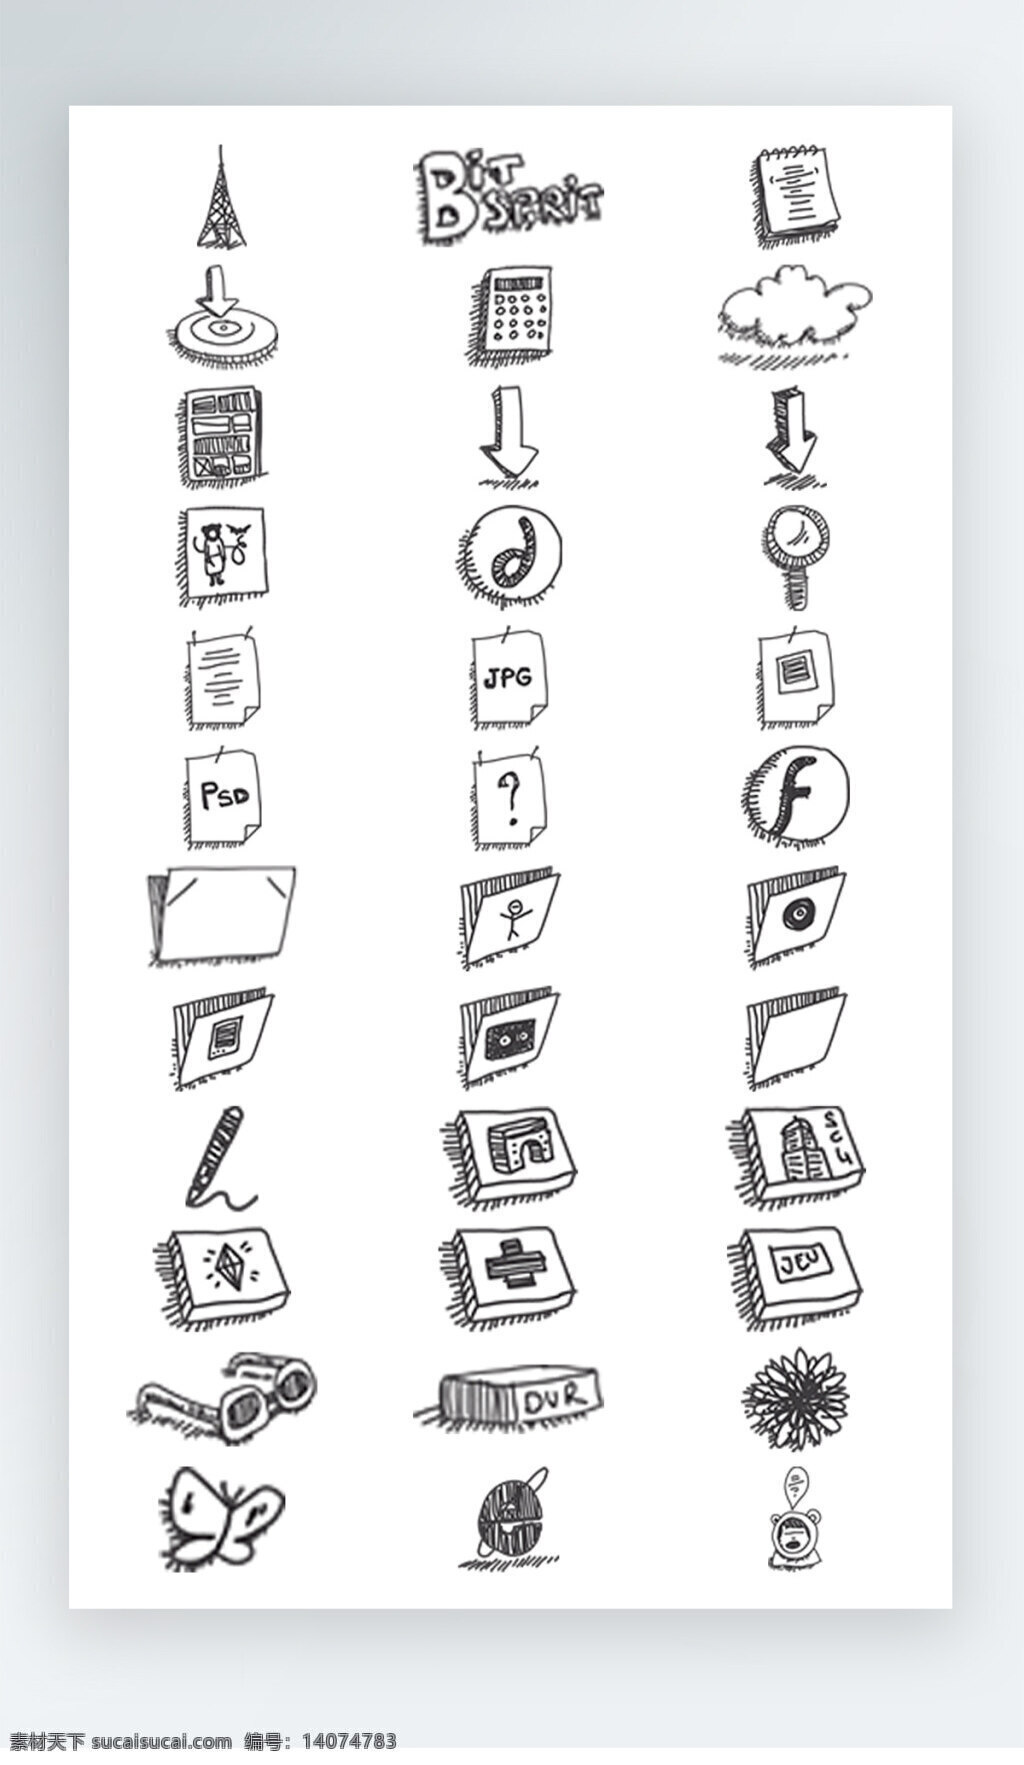 软件 工具 图标 黑白 线 稿 icon 软件工具图标 黑白线稿图标